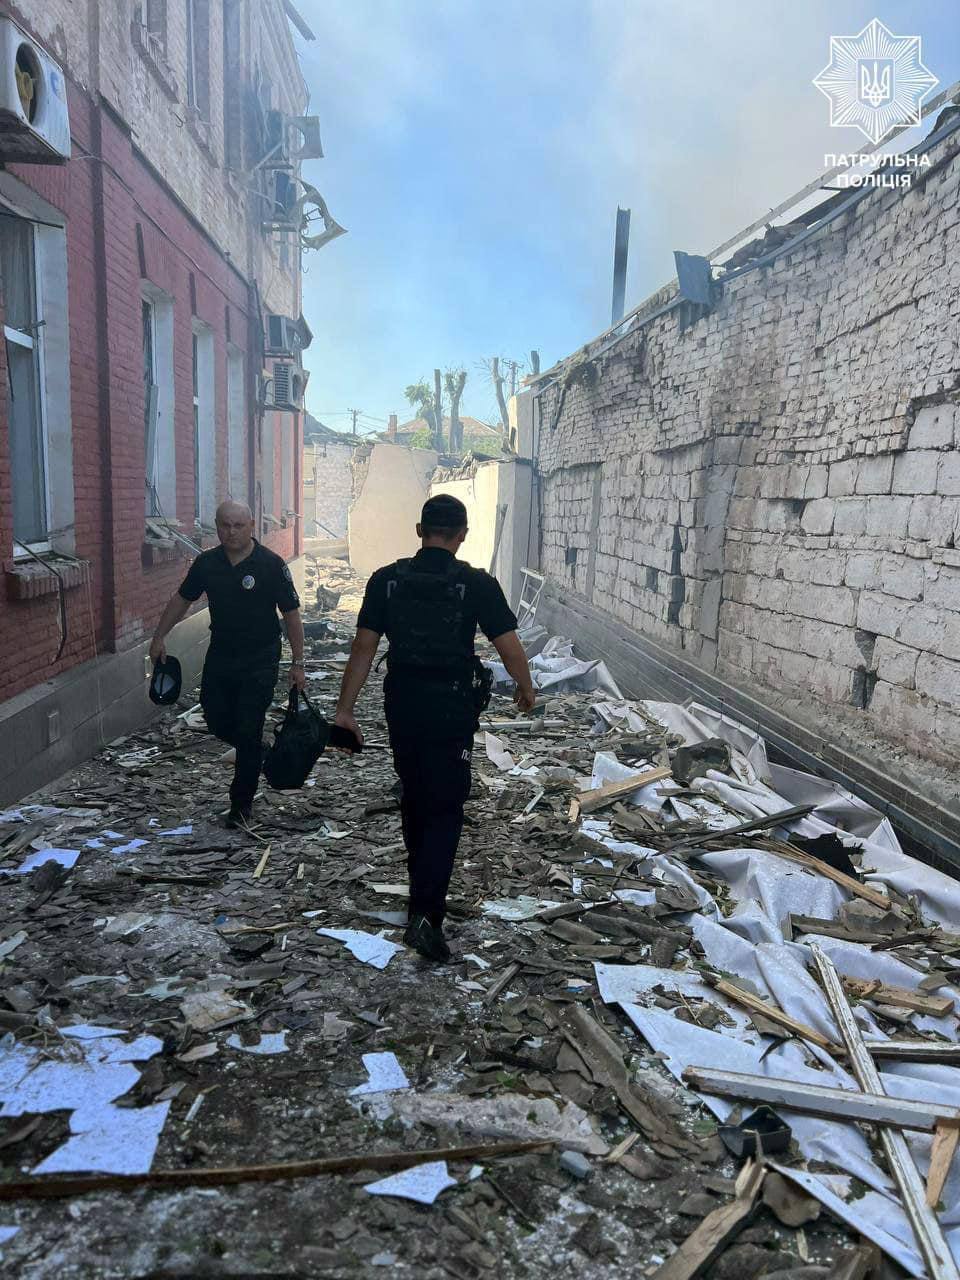 W Krywym Rogu doszło do eksplozji, trwa ucieczka do budynku administracyjnego policji: jedna osoba zginęła, 59 zostało rannych. Zdjęcie